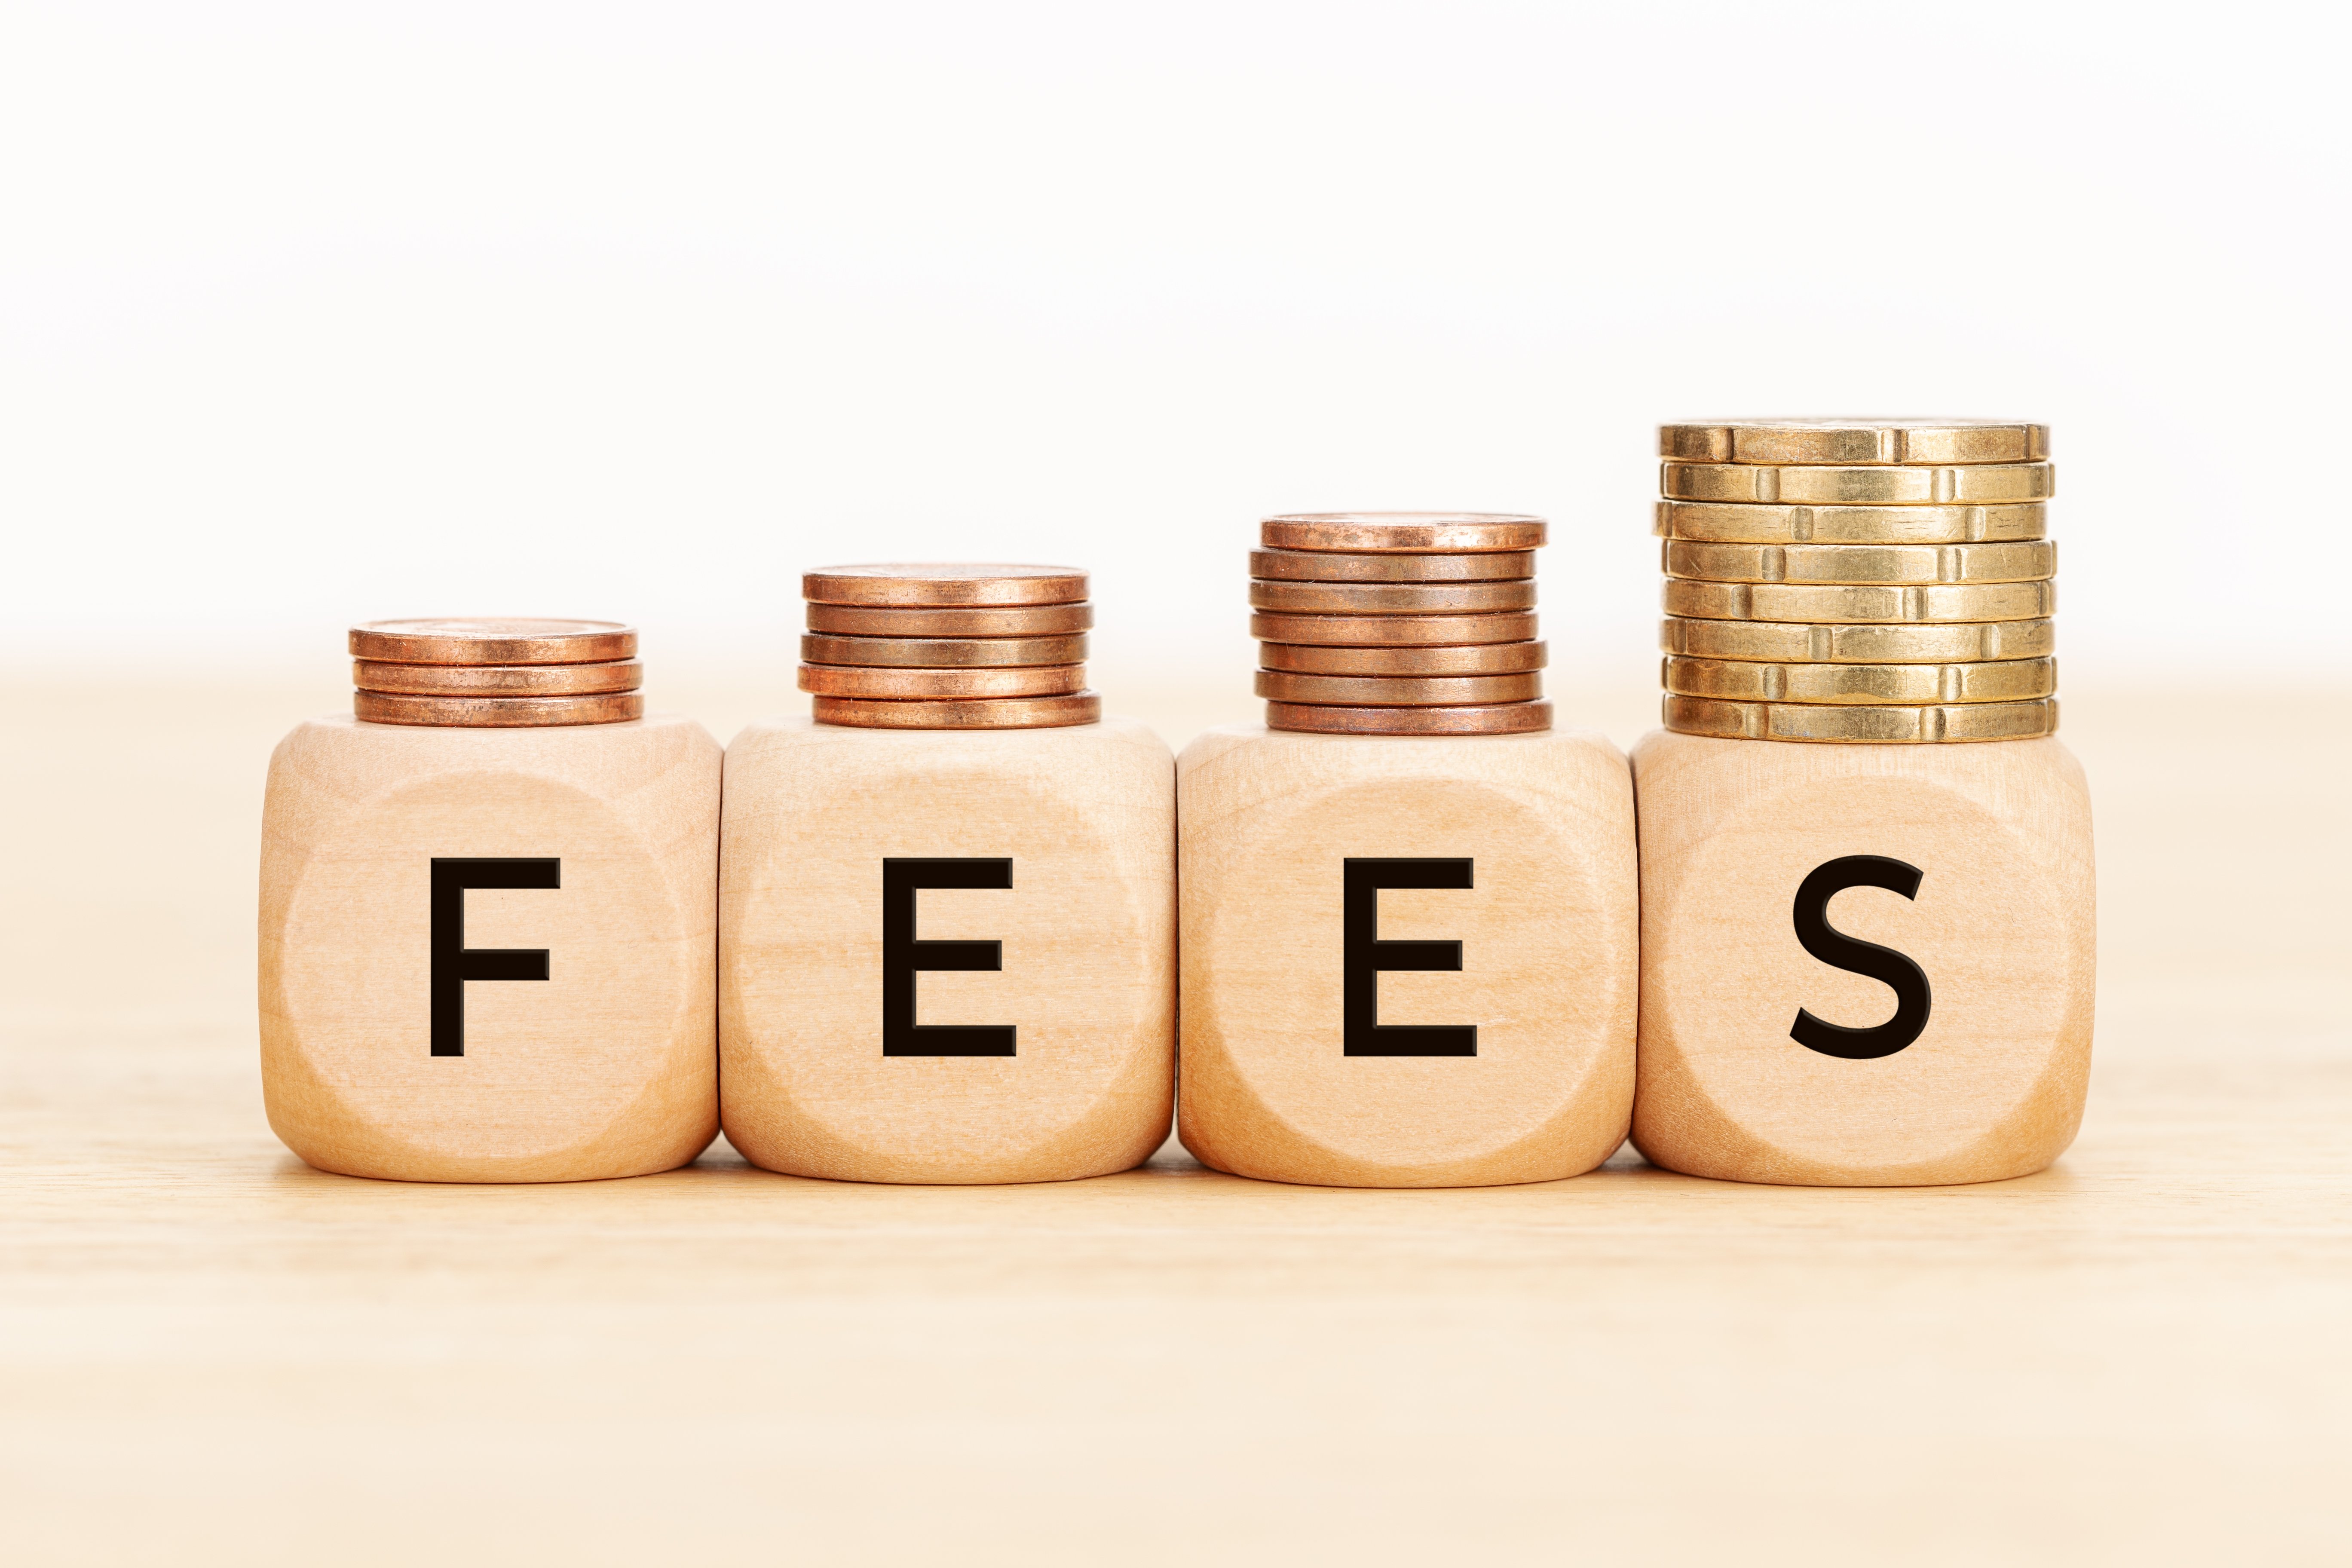 fees-word-on-wooden-blocks-2022-12-16-11-14-06-utc